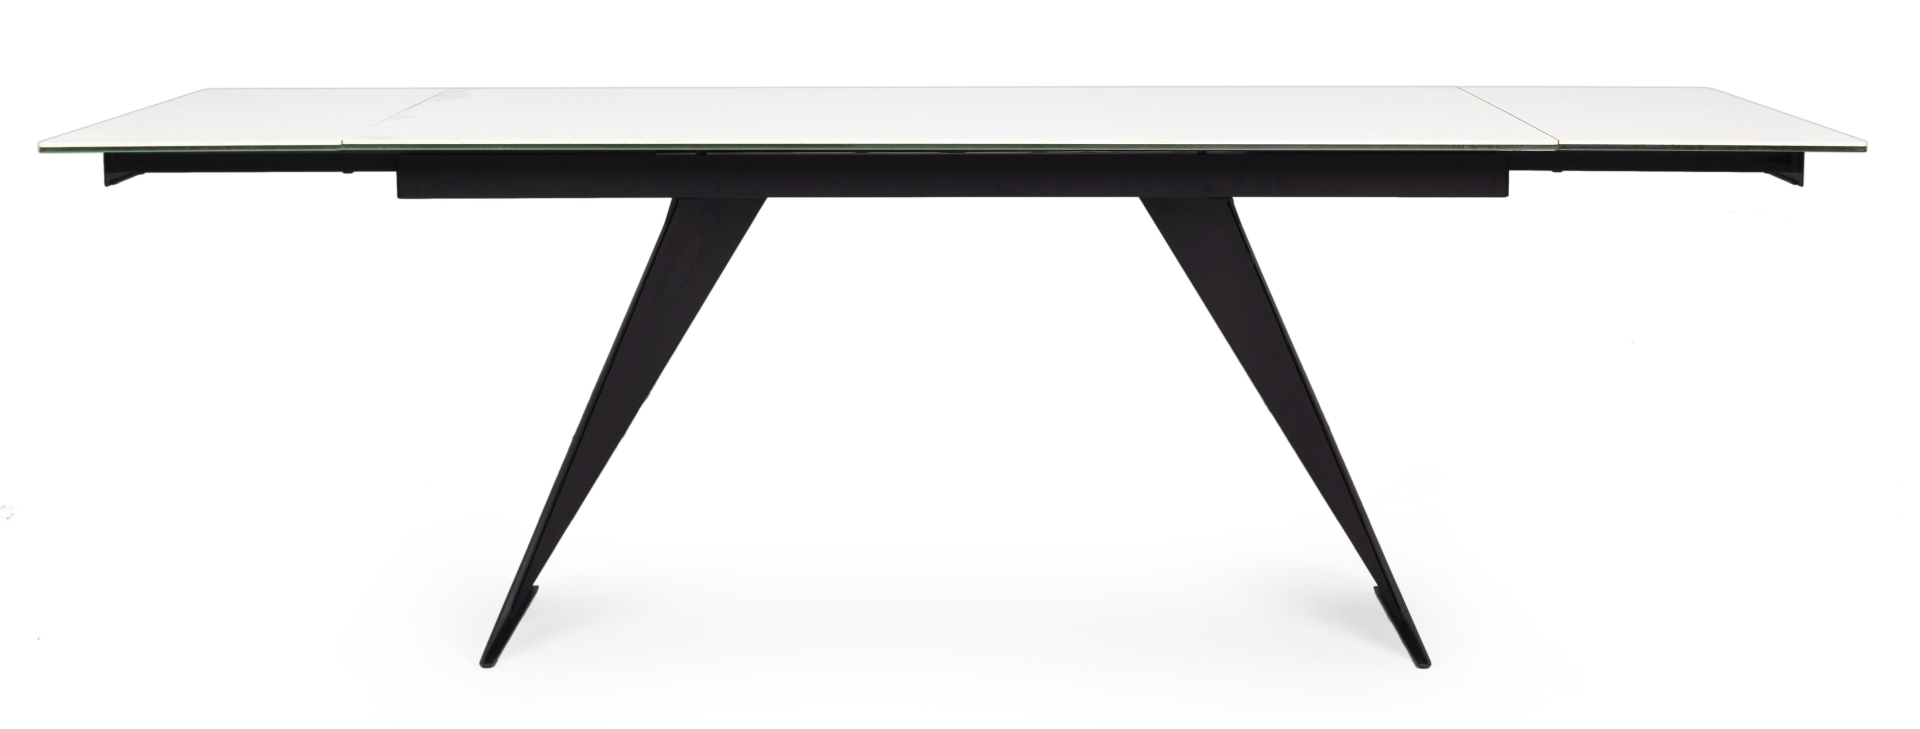 Der Esstisch Blazar überzeugt mit seinem moderndem Design. Gefertigt wurde er aus Keramik, welches einen weißen Farbton besitzt. Das Gestell des Tisches ist aus Metall und ist in eine schwarze Farbe. Der Tisch ist ausziehbar von 160 cm auf 240 cm.